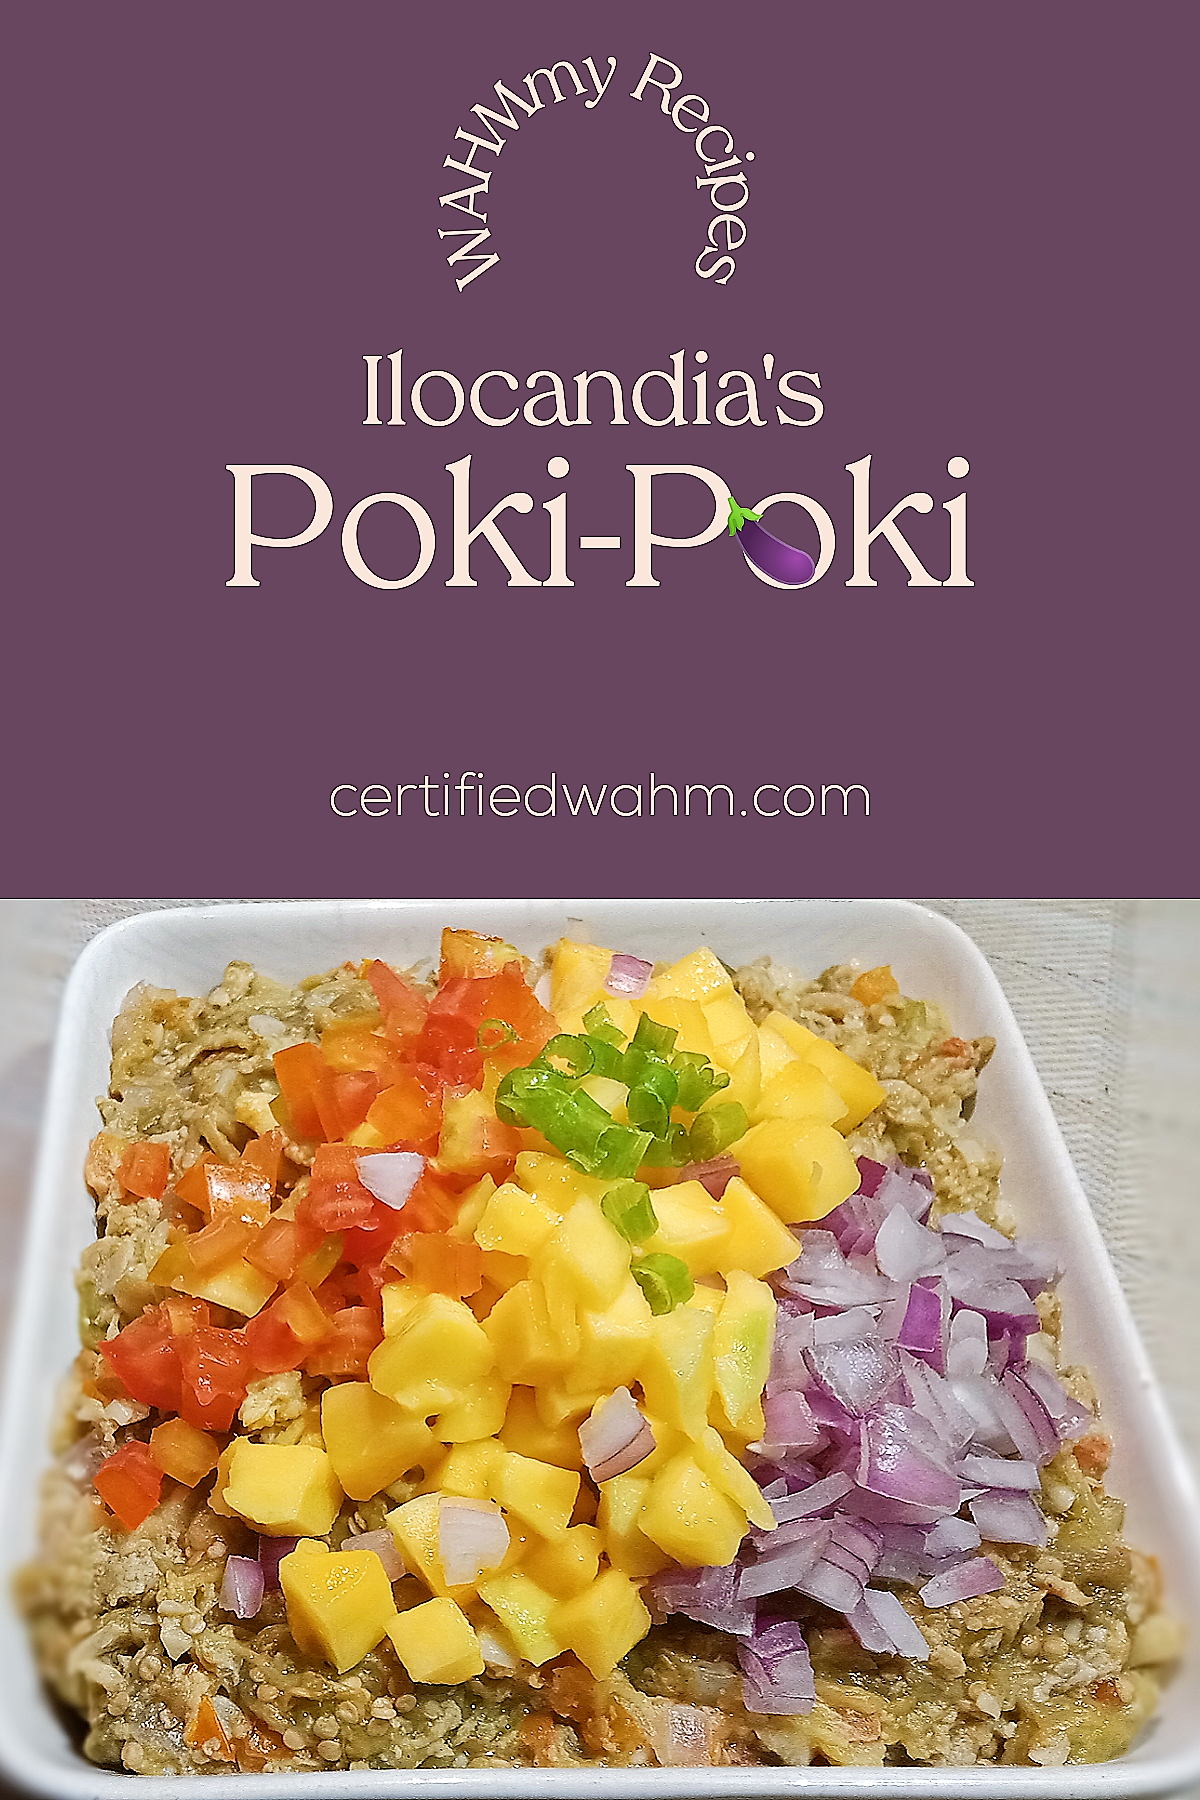 Poki Poki (Poqui Poqui): Ilocandia's signature appetizer